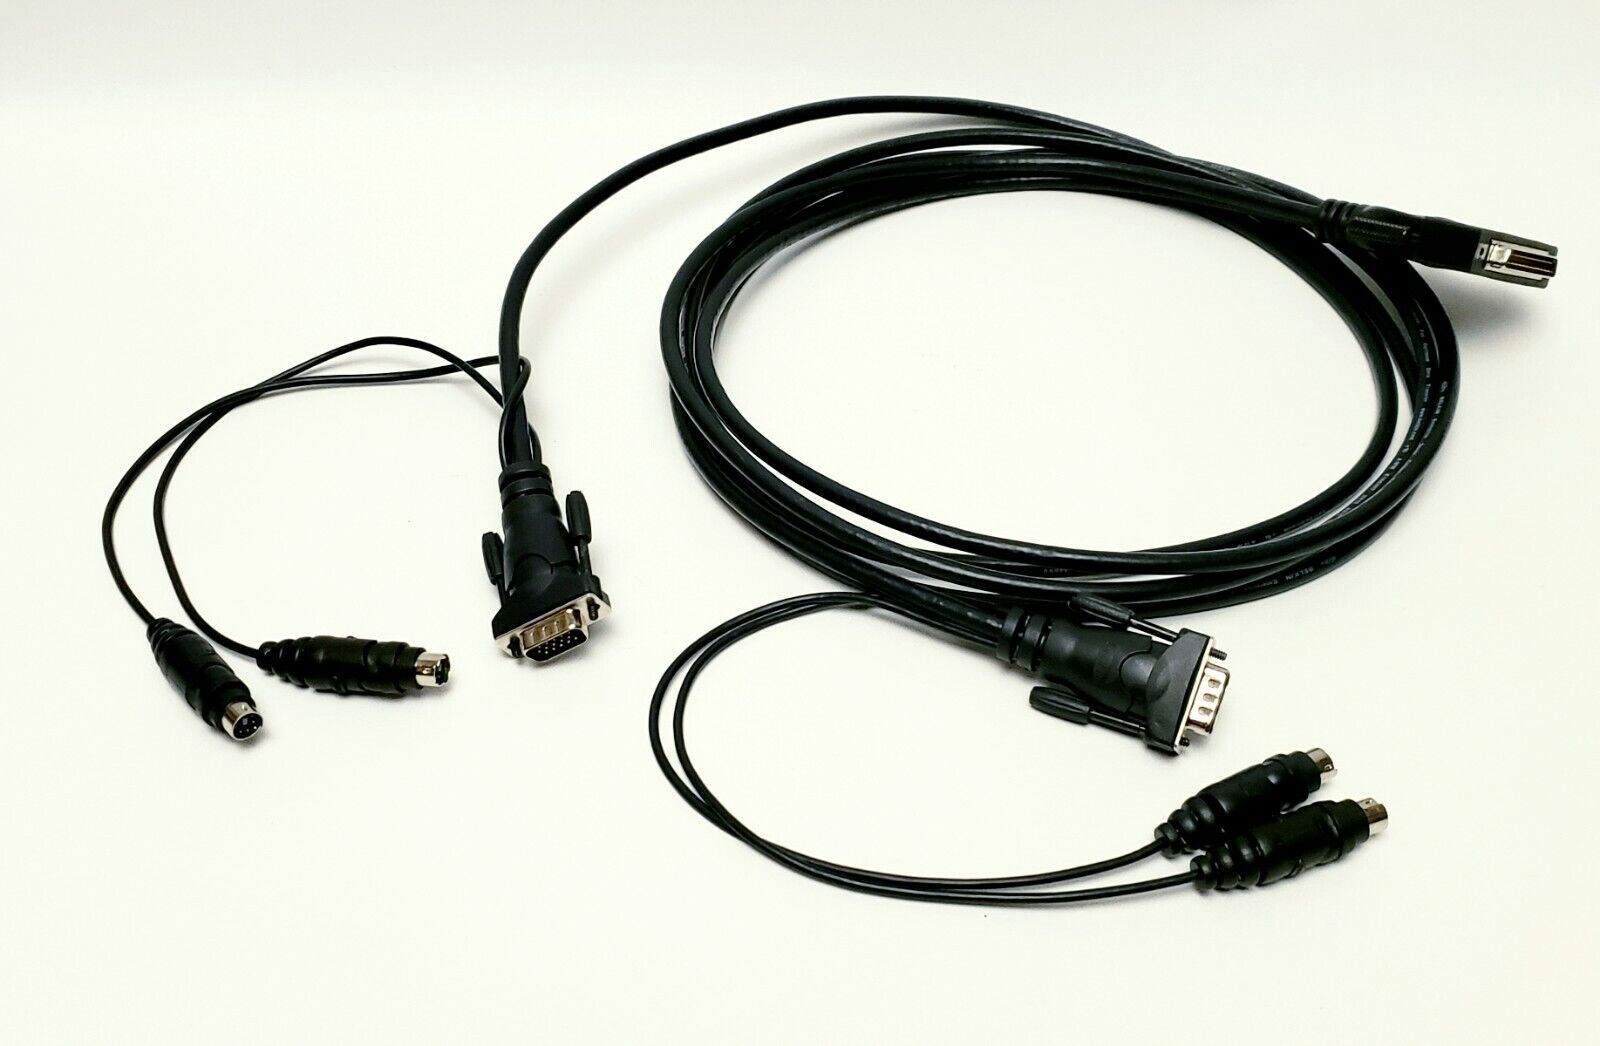 Belkin Enterprise Series Cable For Optimum Data Transfer AWM E166307 2919 6ft.